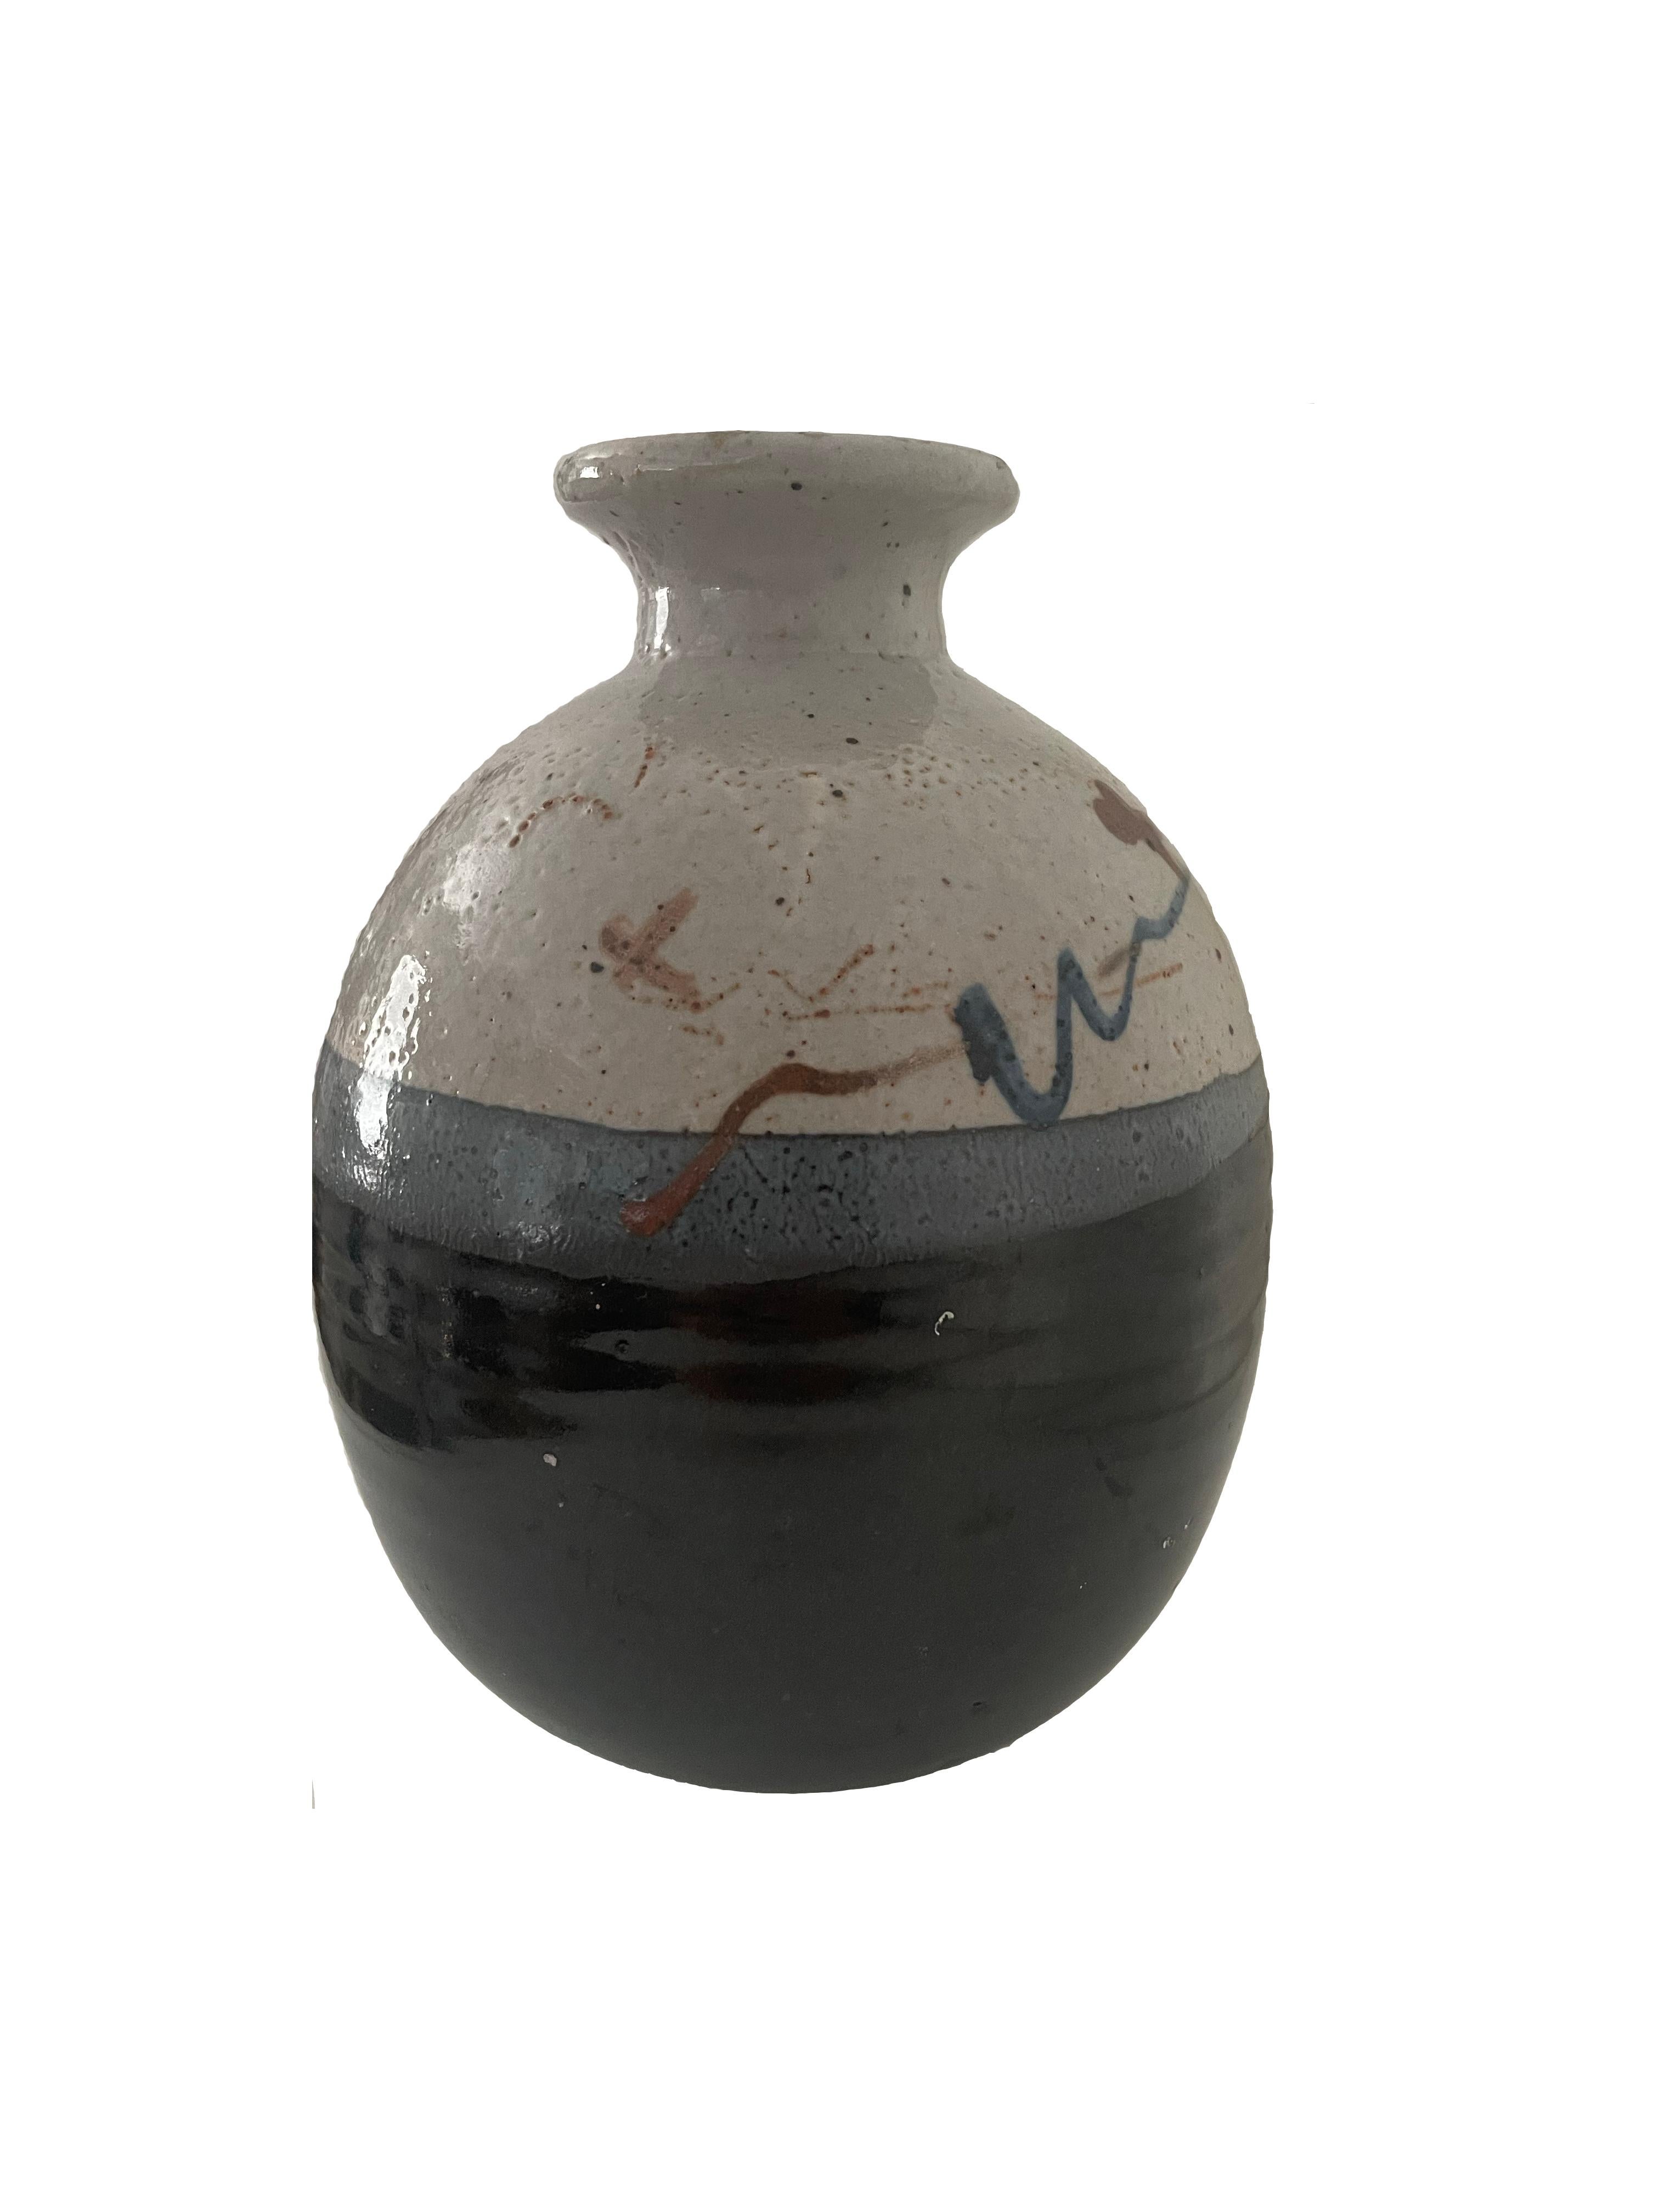 Vase aus glasiertem Steingut mit dekorativer, handgemalter Bemalung  Pinselstriche im oberen Drittel des Gefäßes. Aus dem späten 20. Jahrhundert, mit schmalem, gekniffenem Hals und durchgehend strukturierter Oberfläche. Mehrfarbige Glasur in